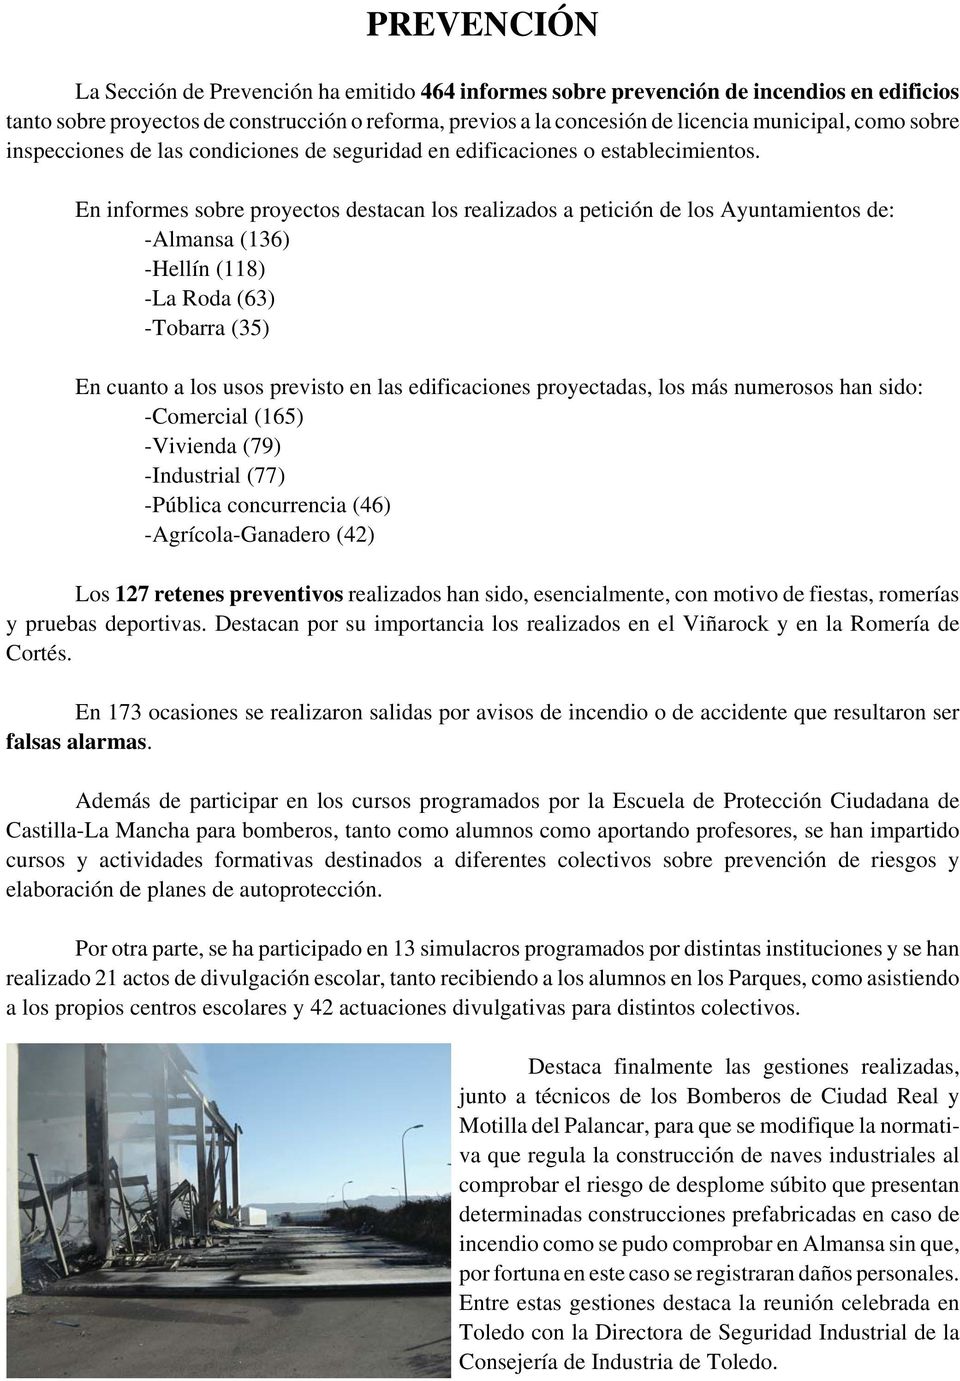 En informes sobre proyectos destacan los realizados a petición de los Ayuntamientos de: -Almansa (136) -Hellín (118) -La Roda (63) -Tobarra (35) En cuanto a los usos previsto en las edificaciones